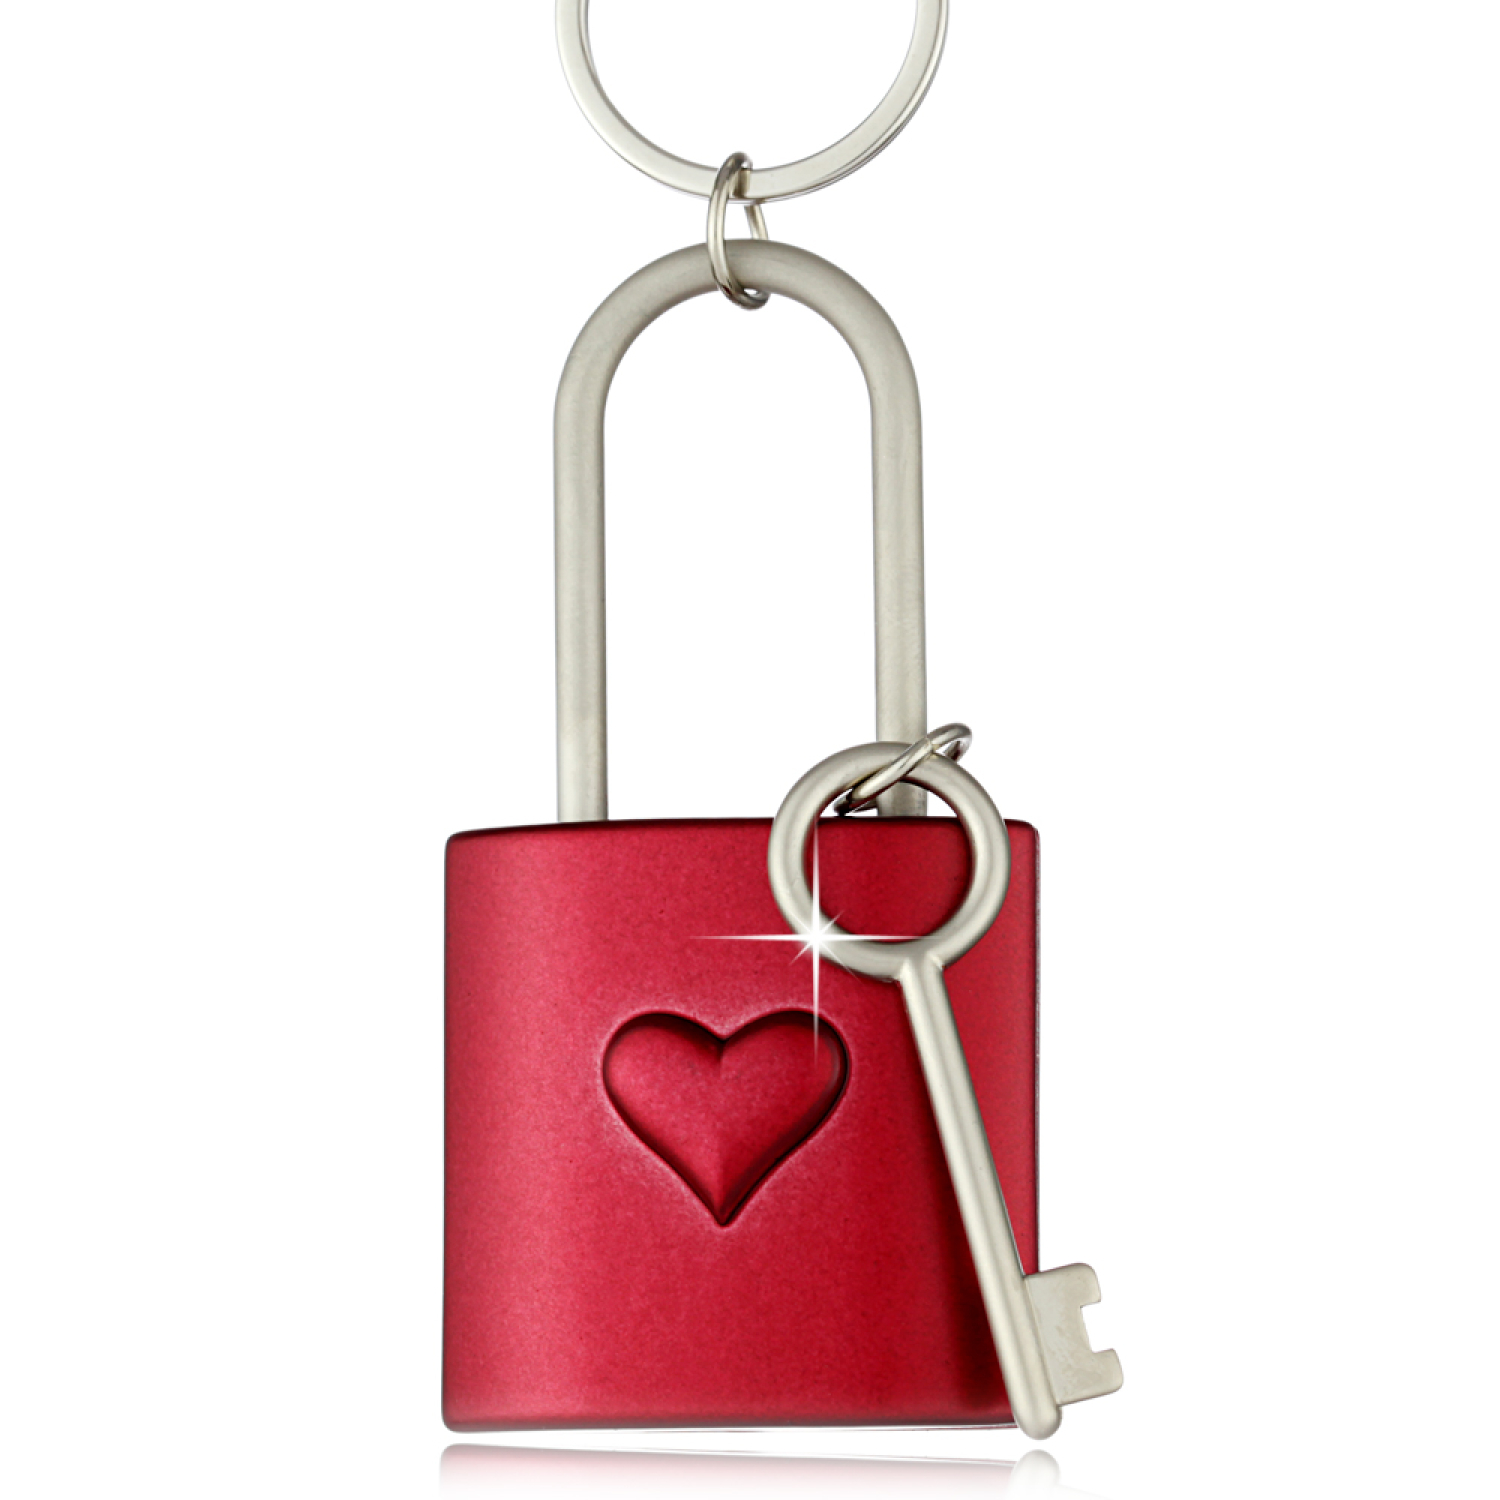 Der schöne Schlüsselanhänger Liebesschloss eckig mit Herz in rot